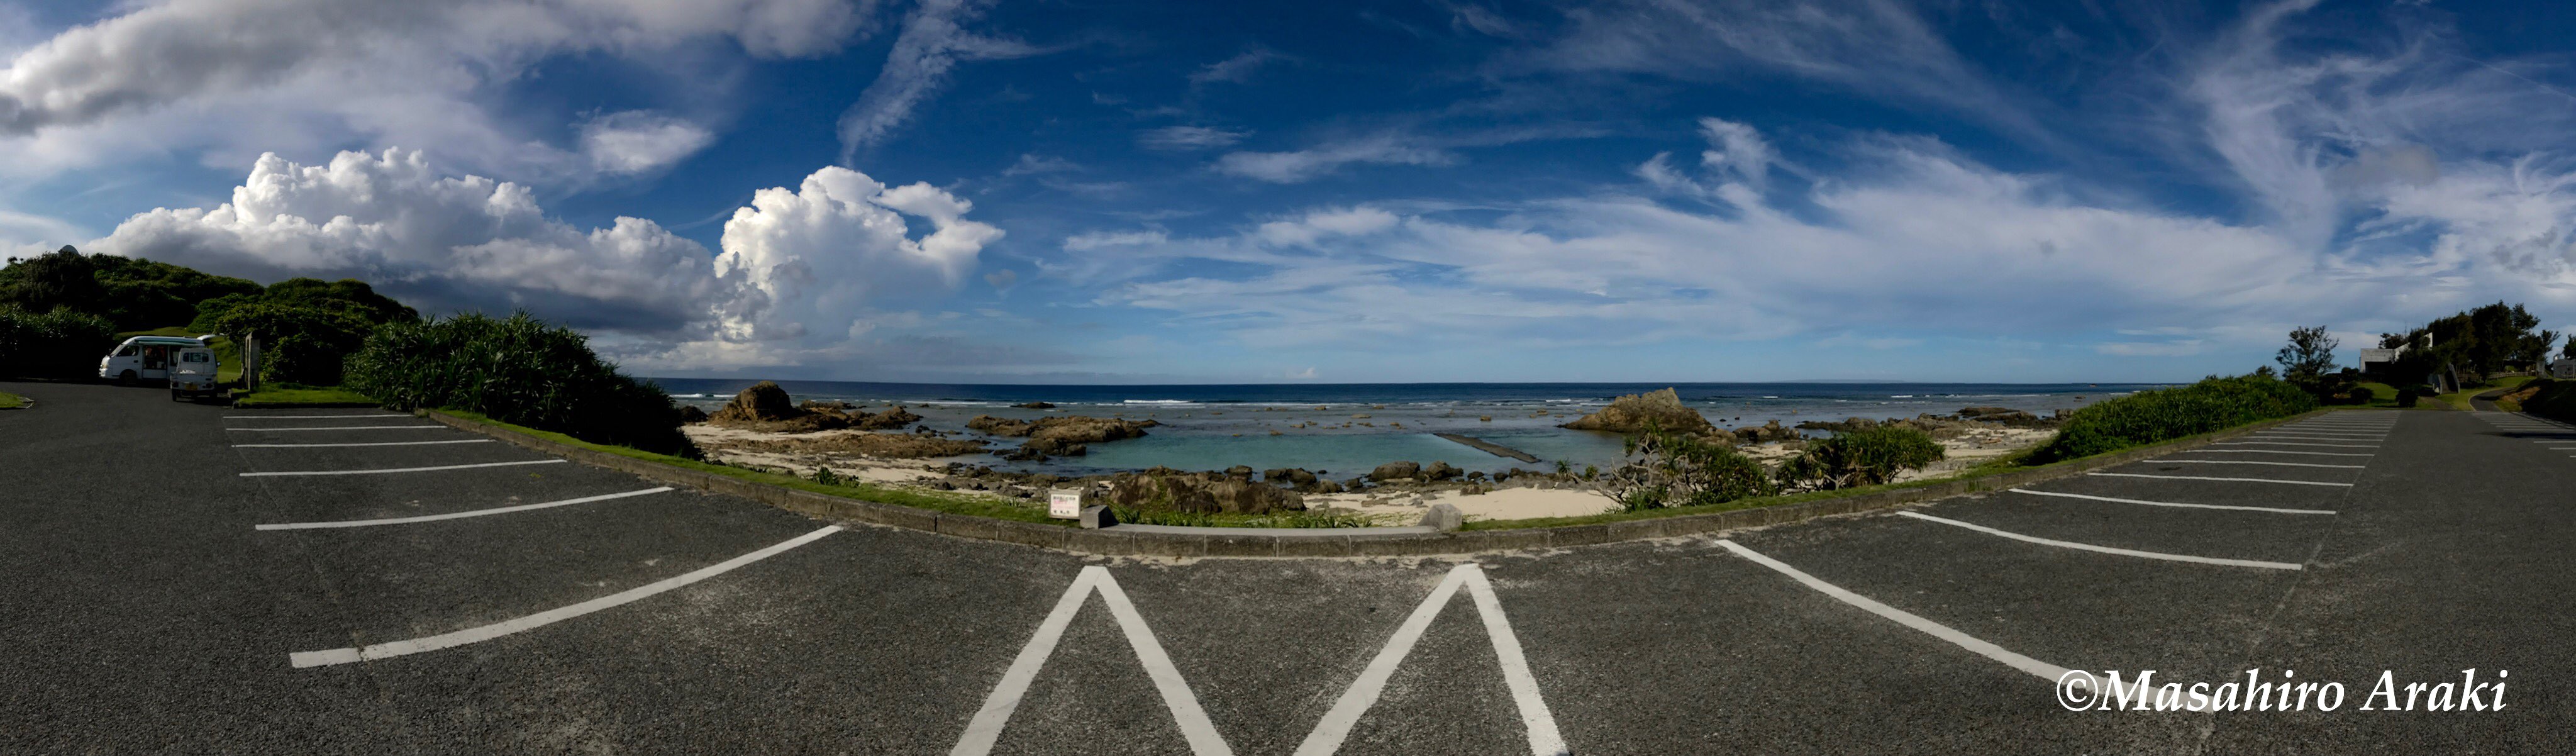 あやまる岬観光公園タイドプール前からの風景写真001_08 のコピー